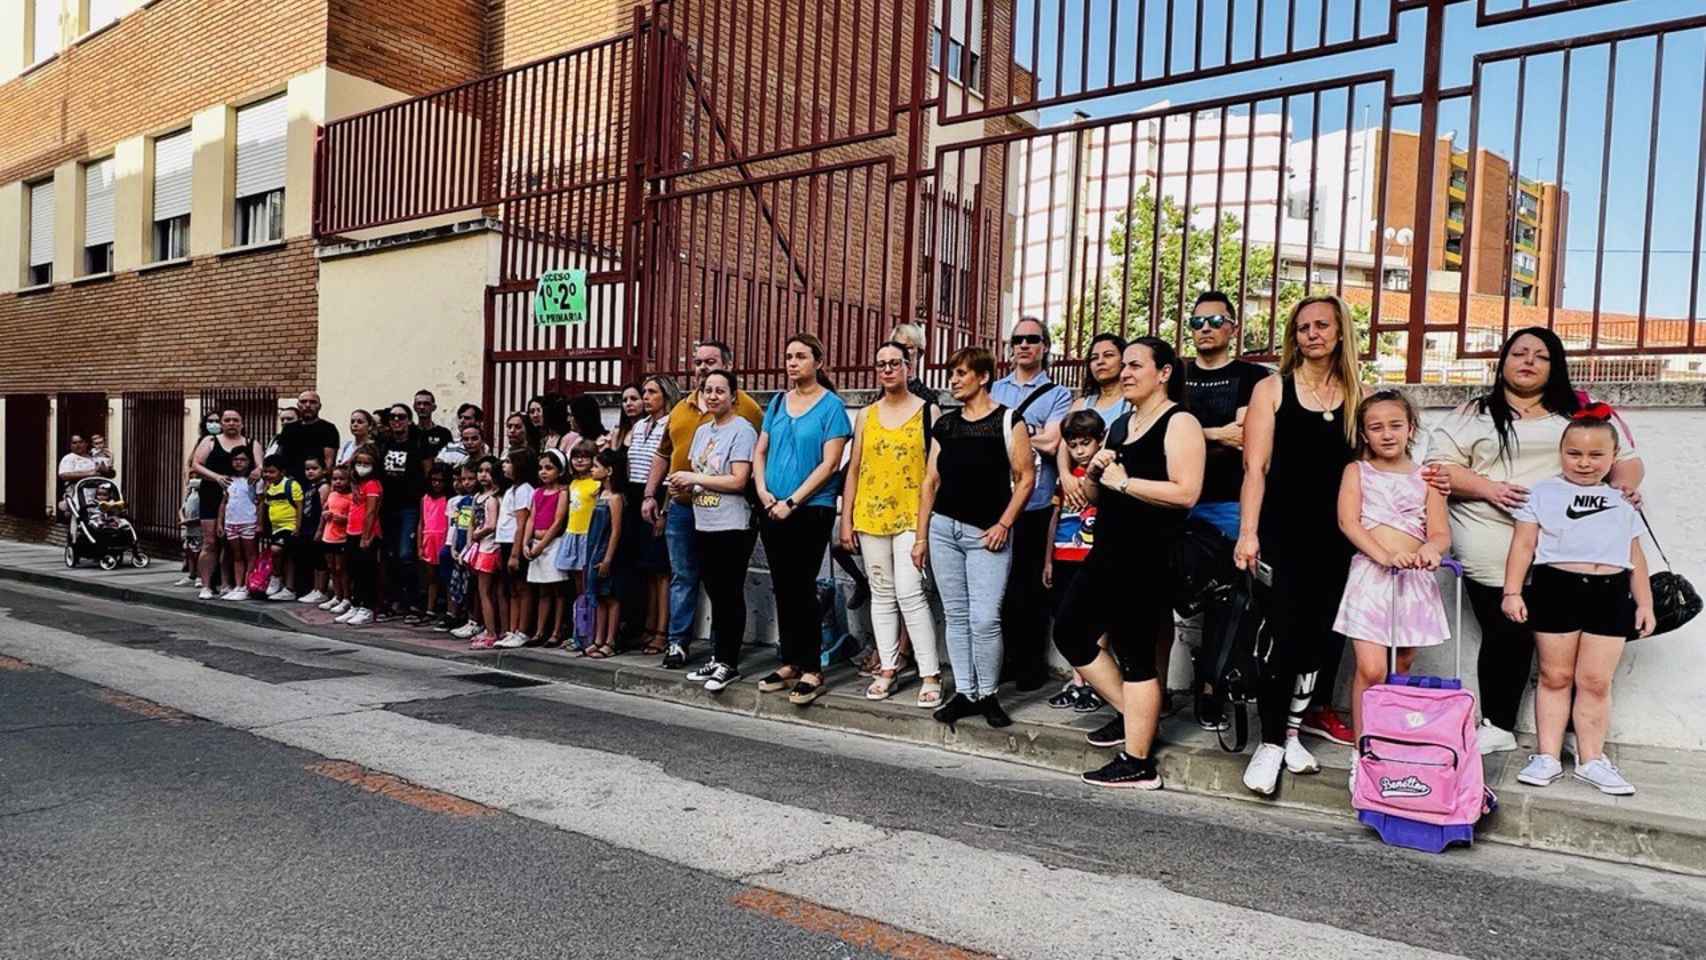 Festival Corto en Ciudad Real, Día de la Música en Albacete, protesta en un colegio de Puertollano